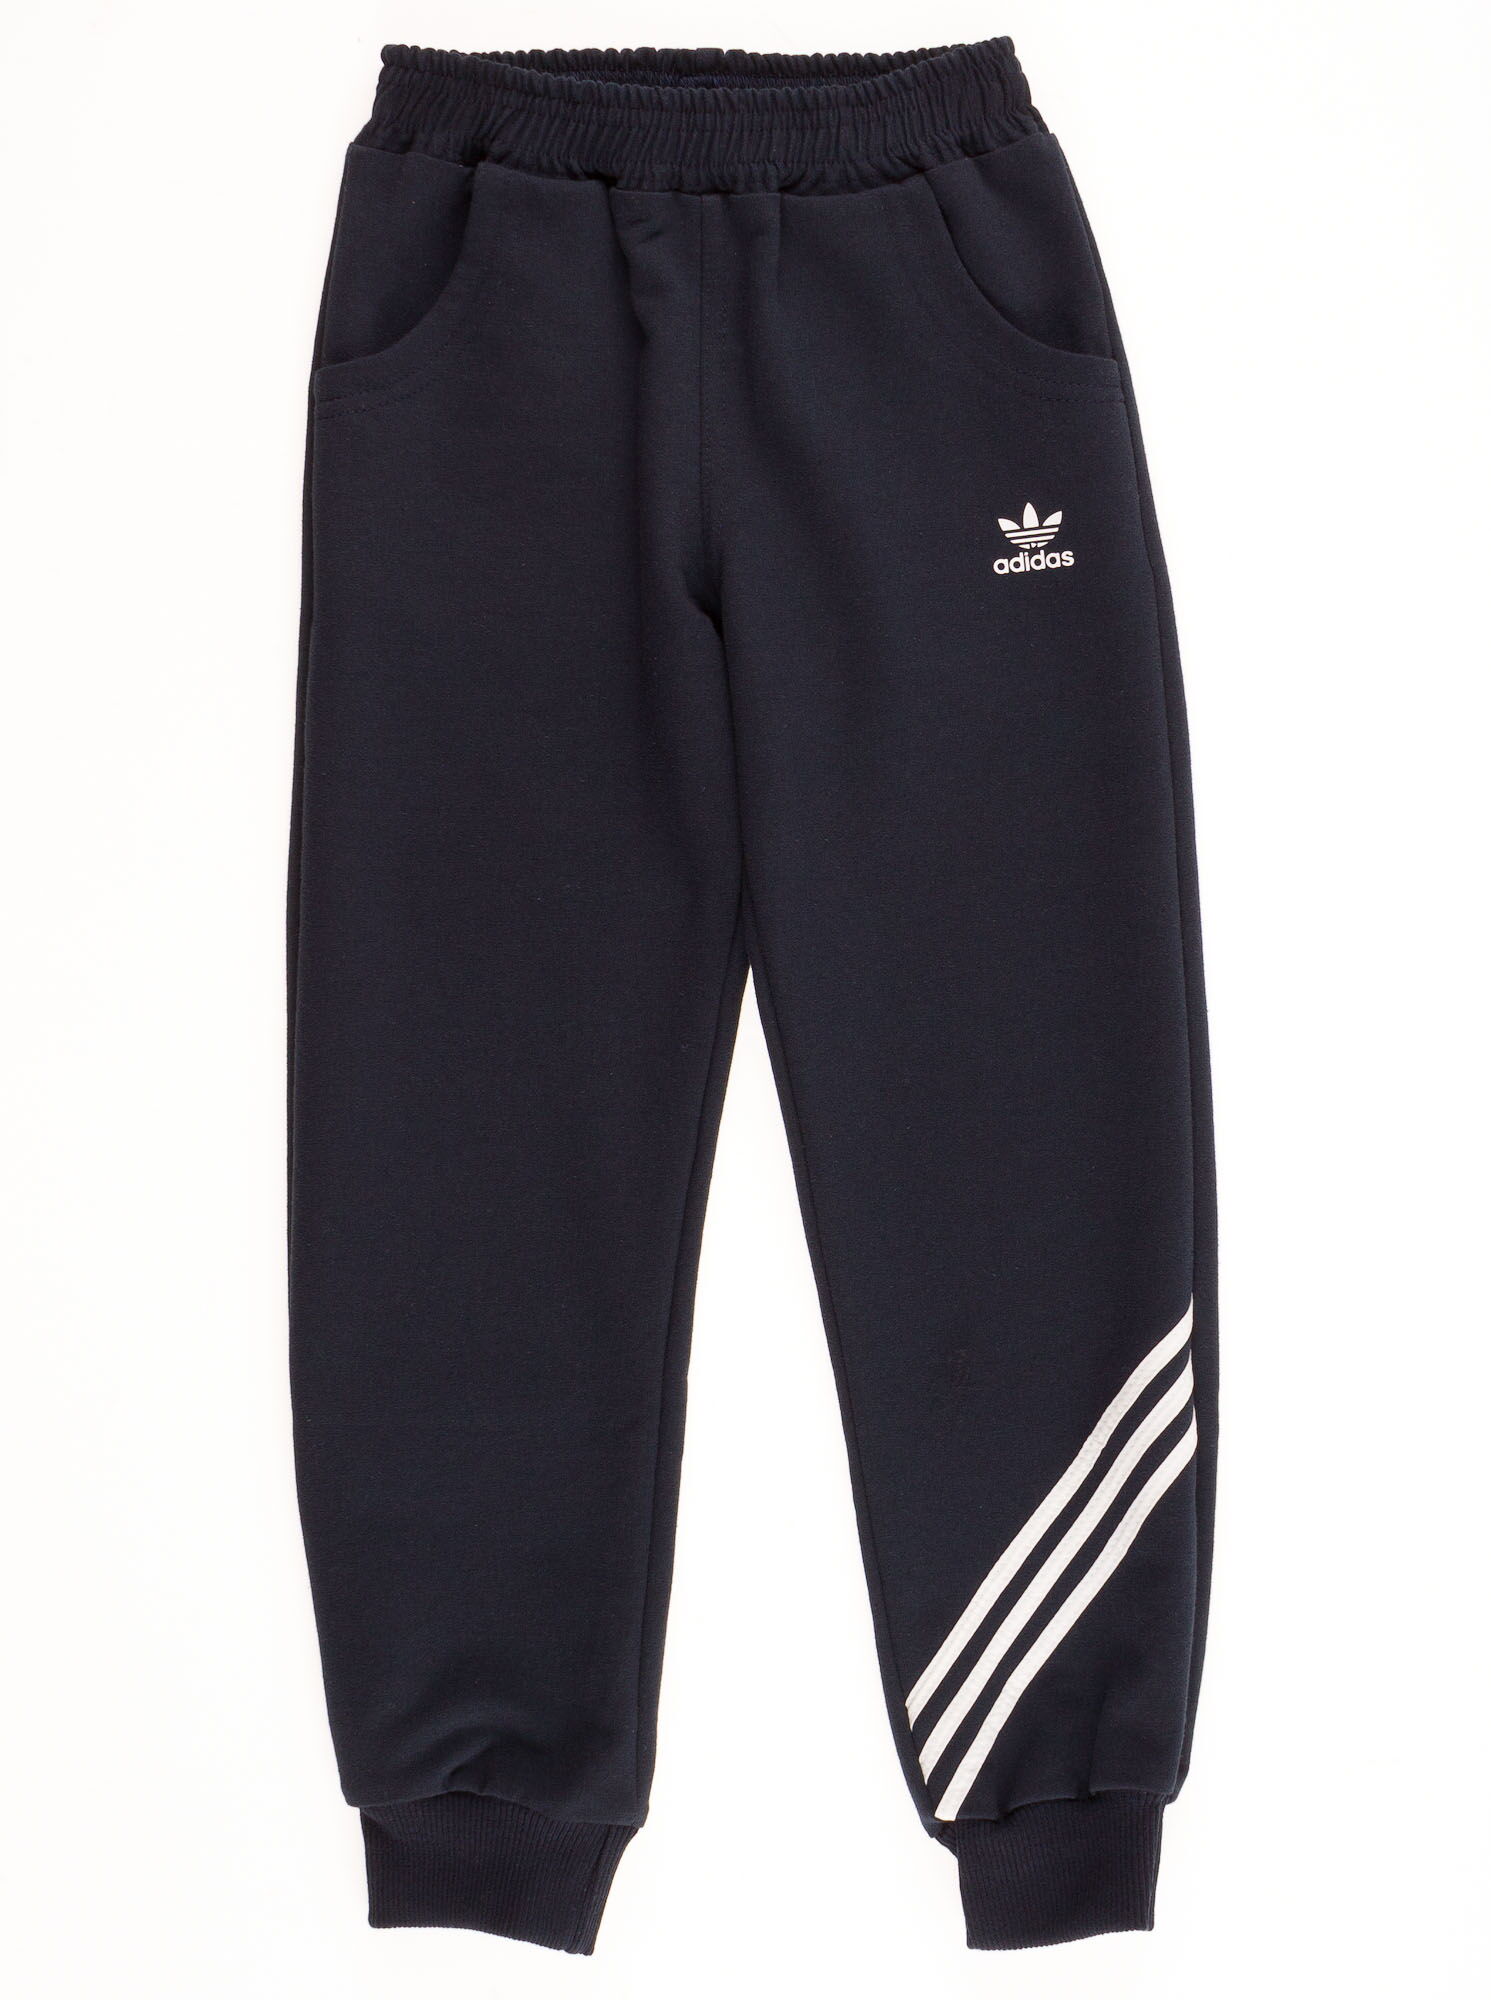 Спортивные штаны для мальчика Adidas темно-синие  - цена